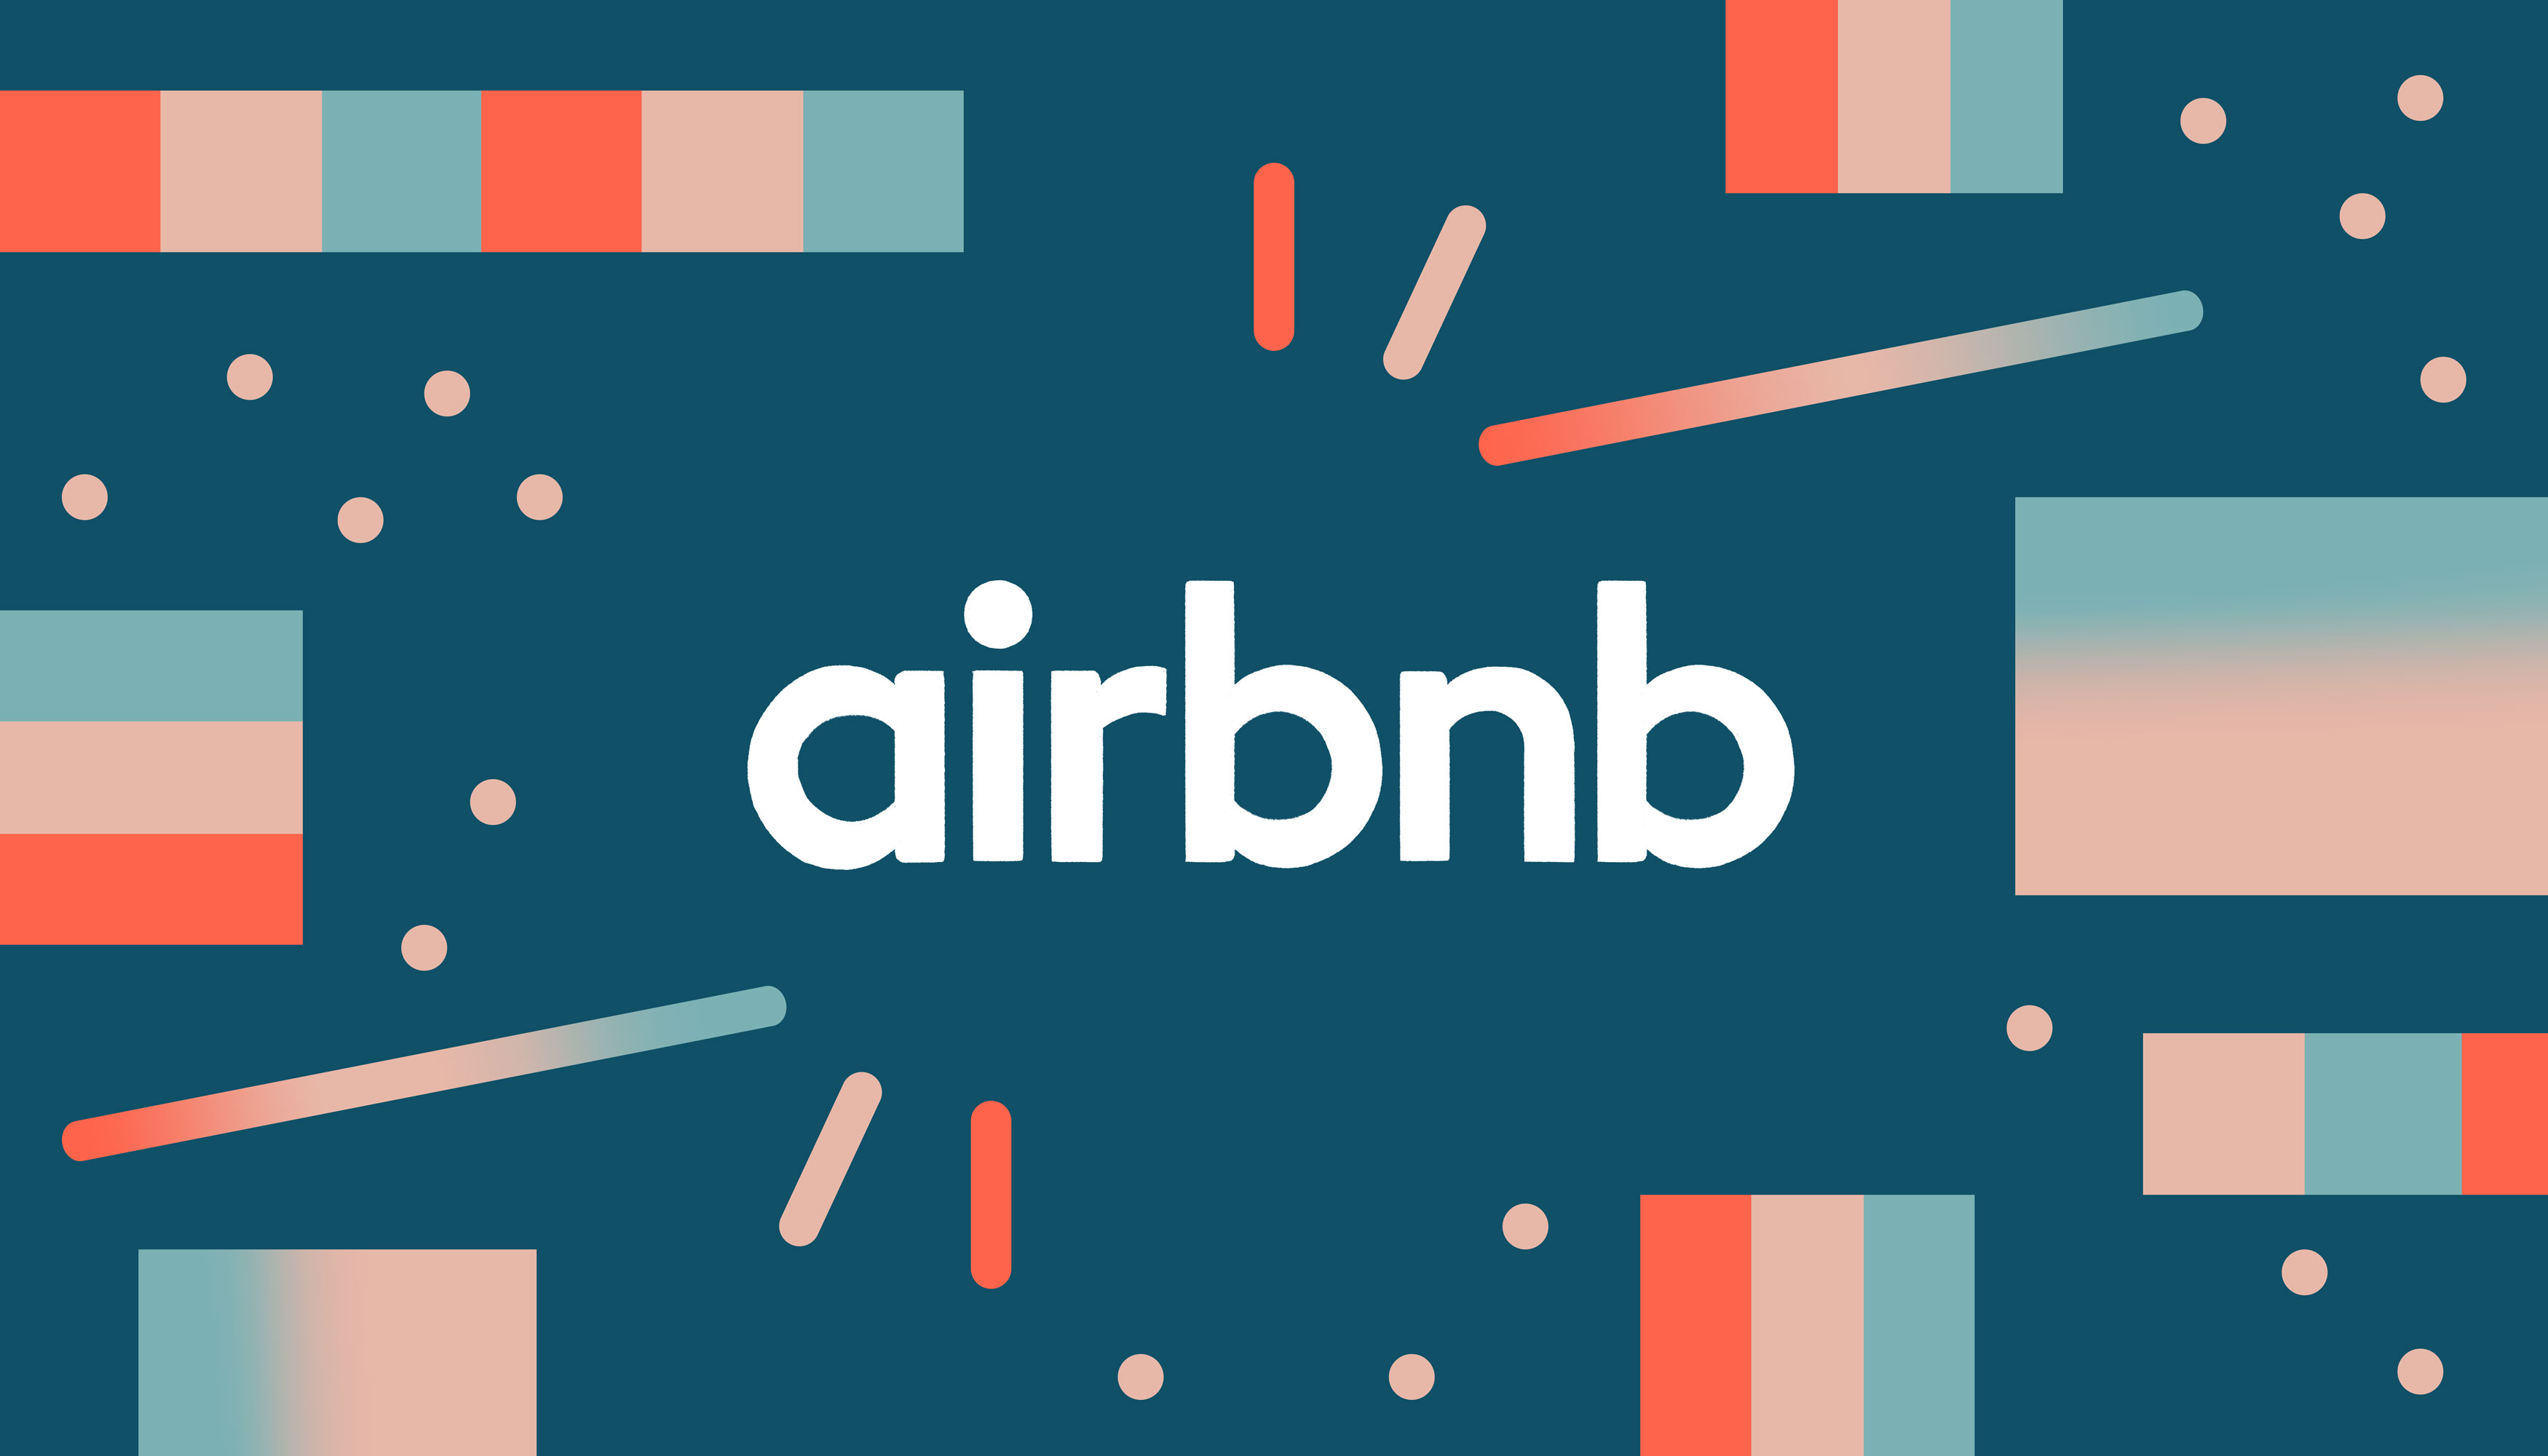 插图文字“airbnb”与粉红色和蓝色图形。